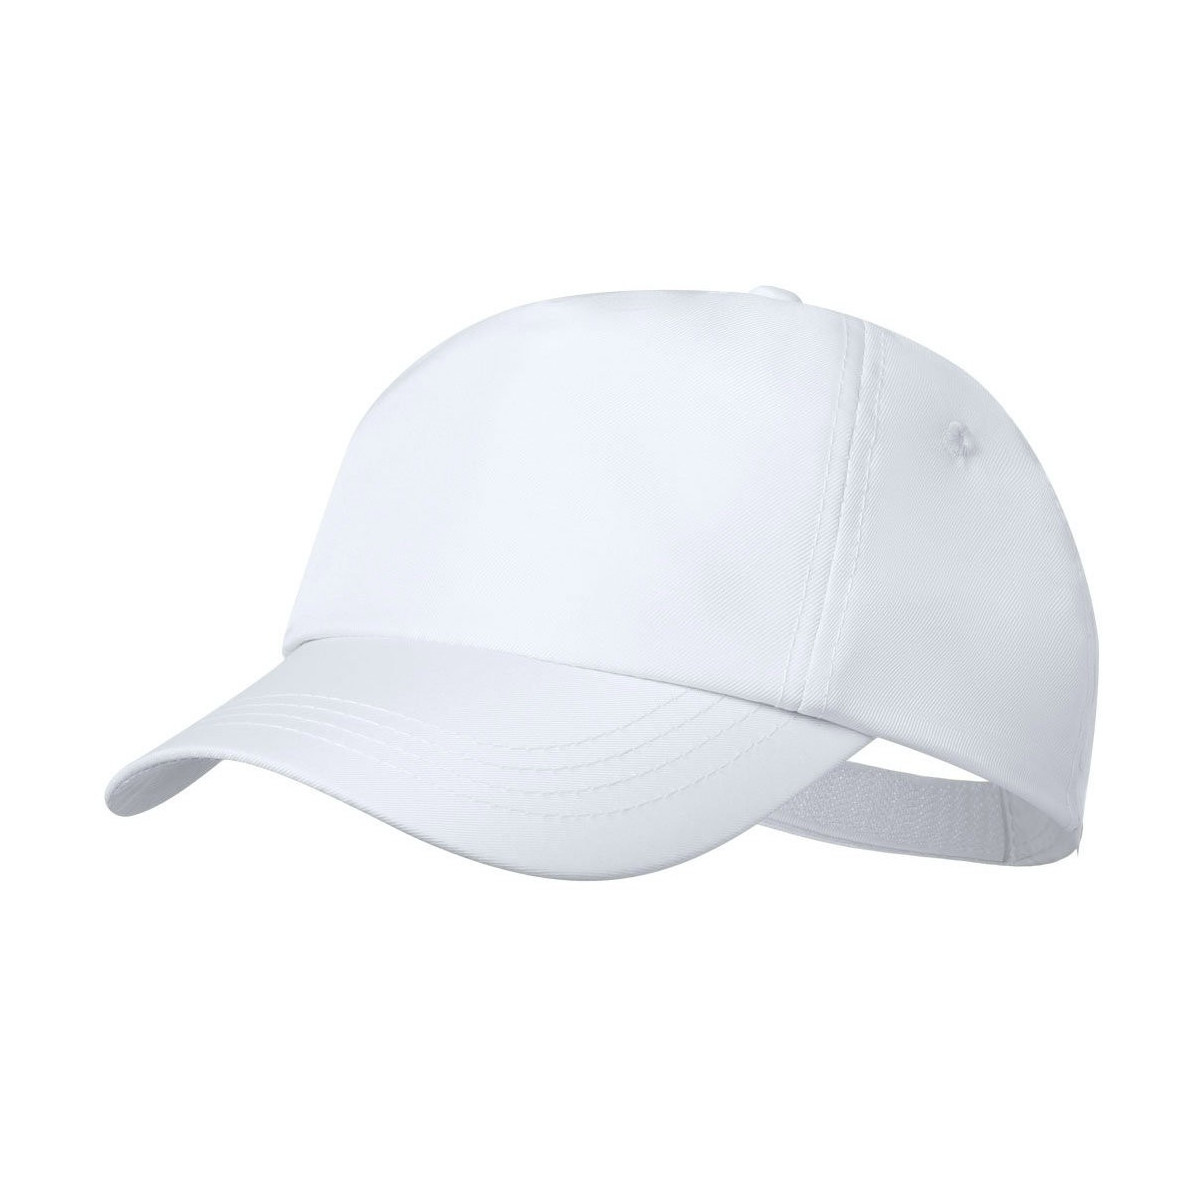 Gorra casual deportivas color blanco